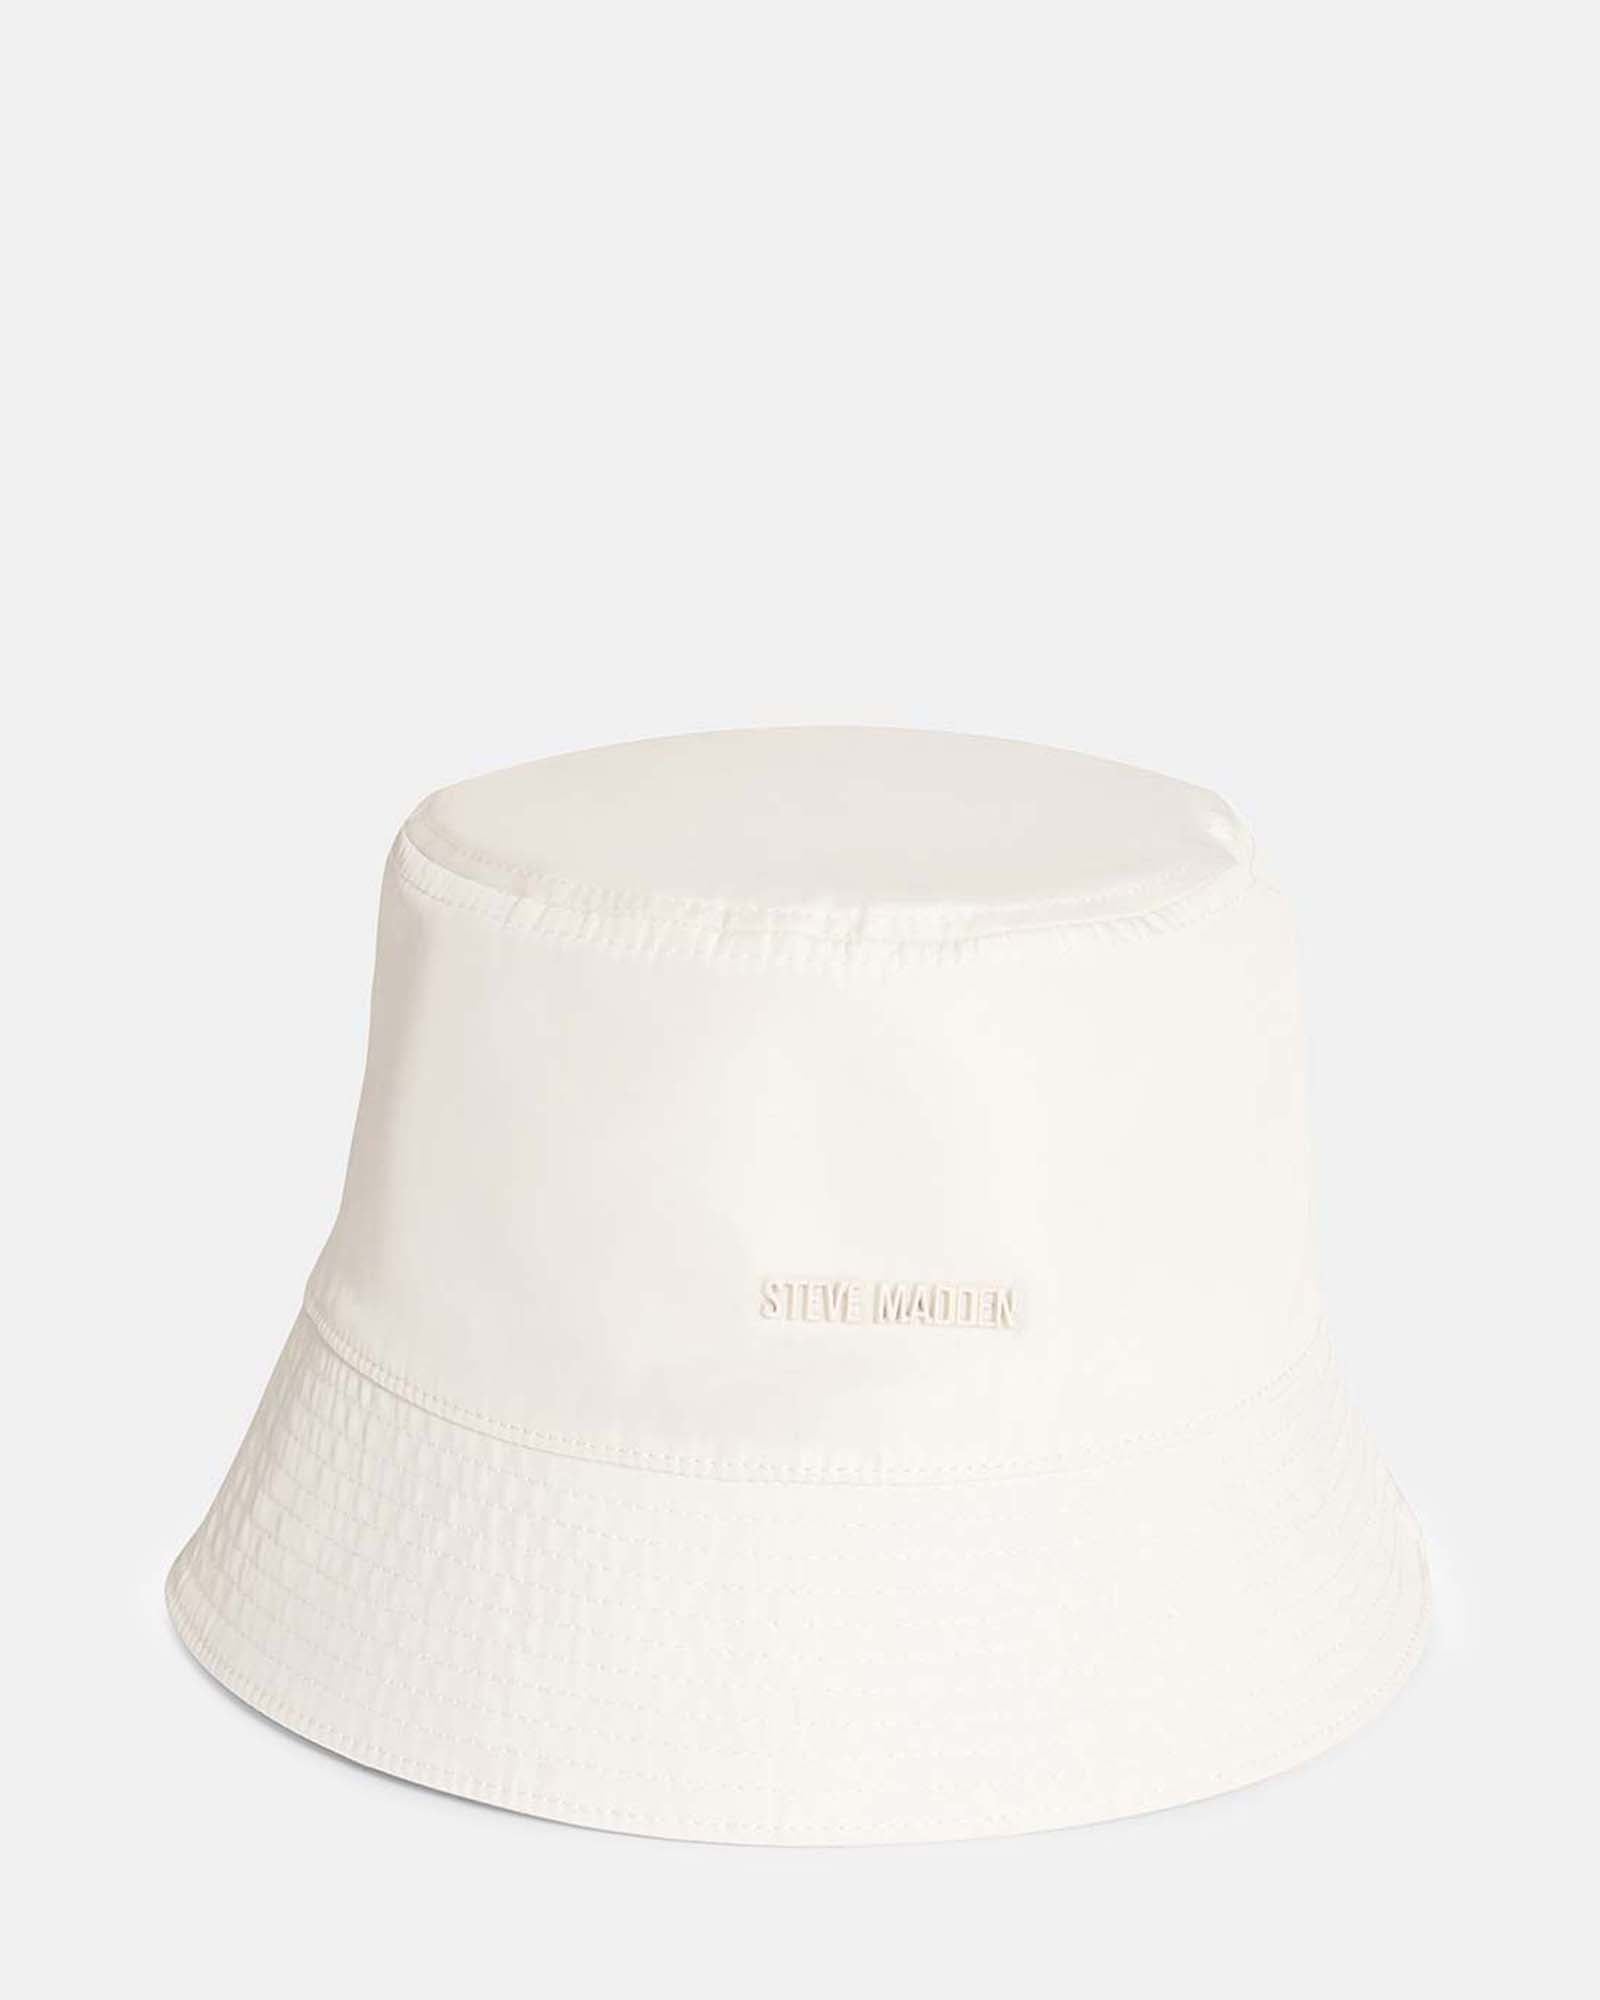 Steve Madden Women's Solid Satin-Lined Nylon Bucket Hat - White